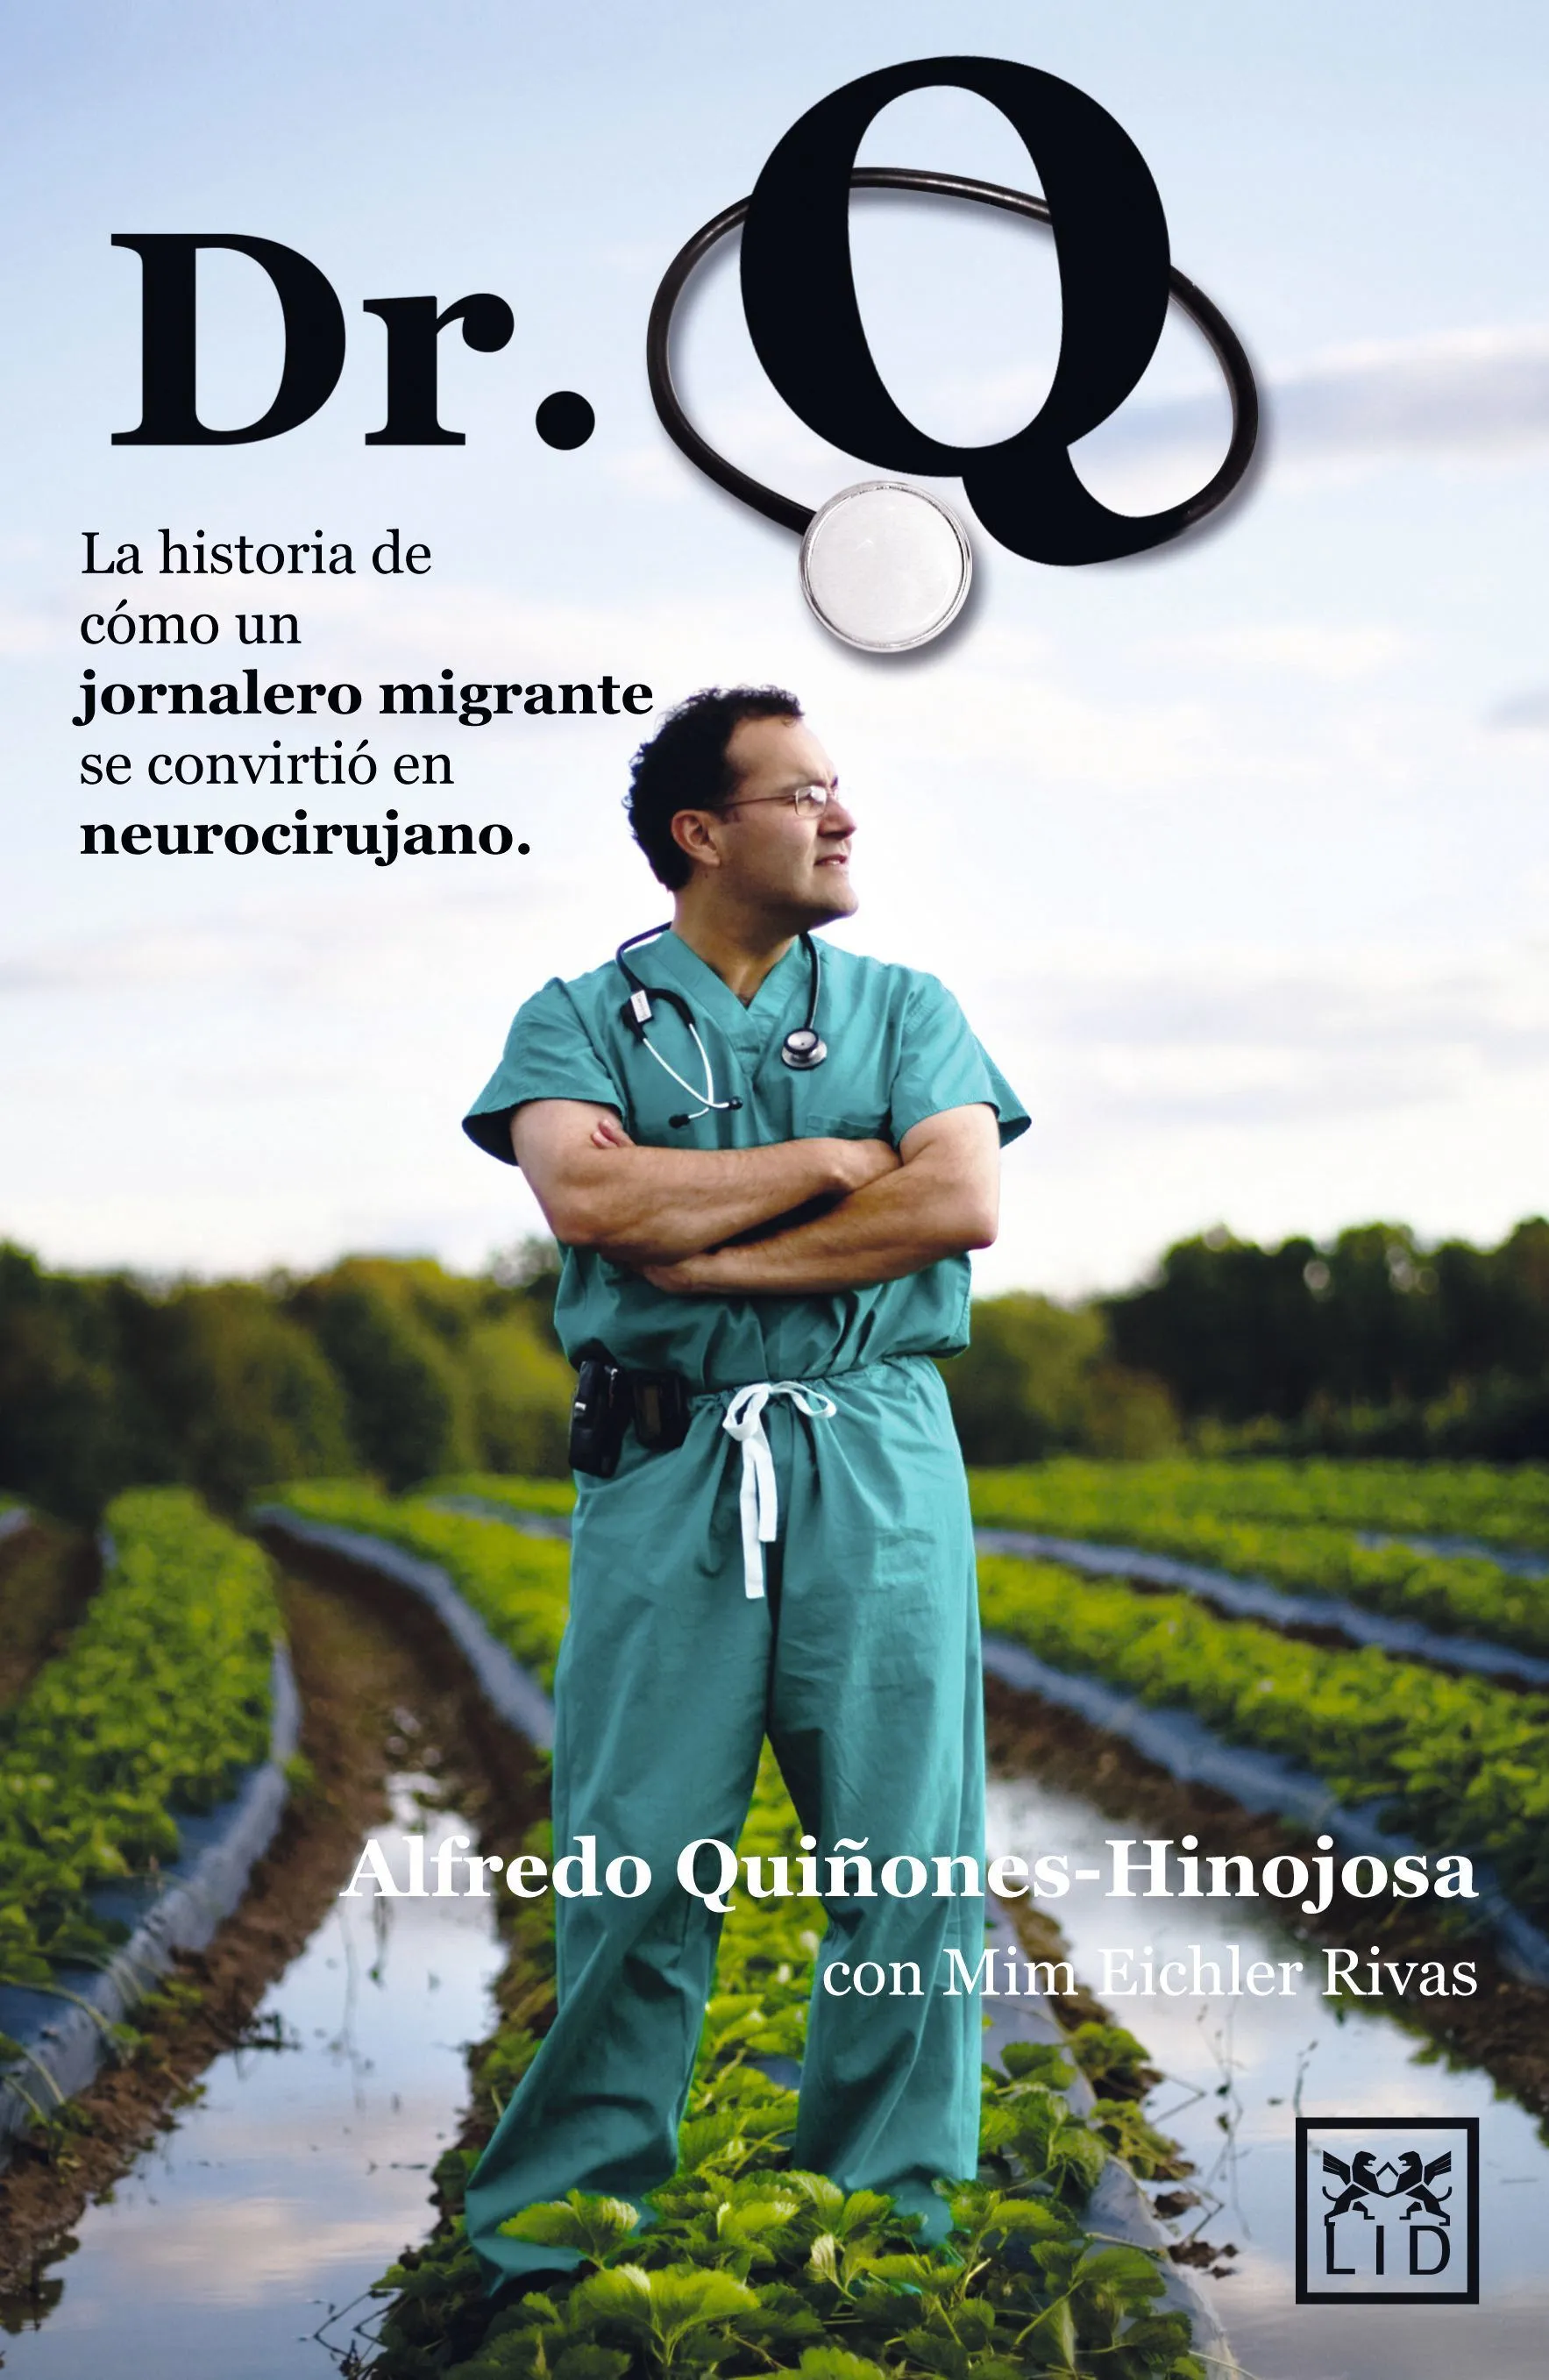  Alfredo Quiñones-Hinojosa, Dr. Q, la historia de cómo un jornalero migrante se convirtió en neurocirujano, 2013.